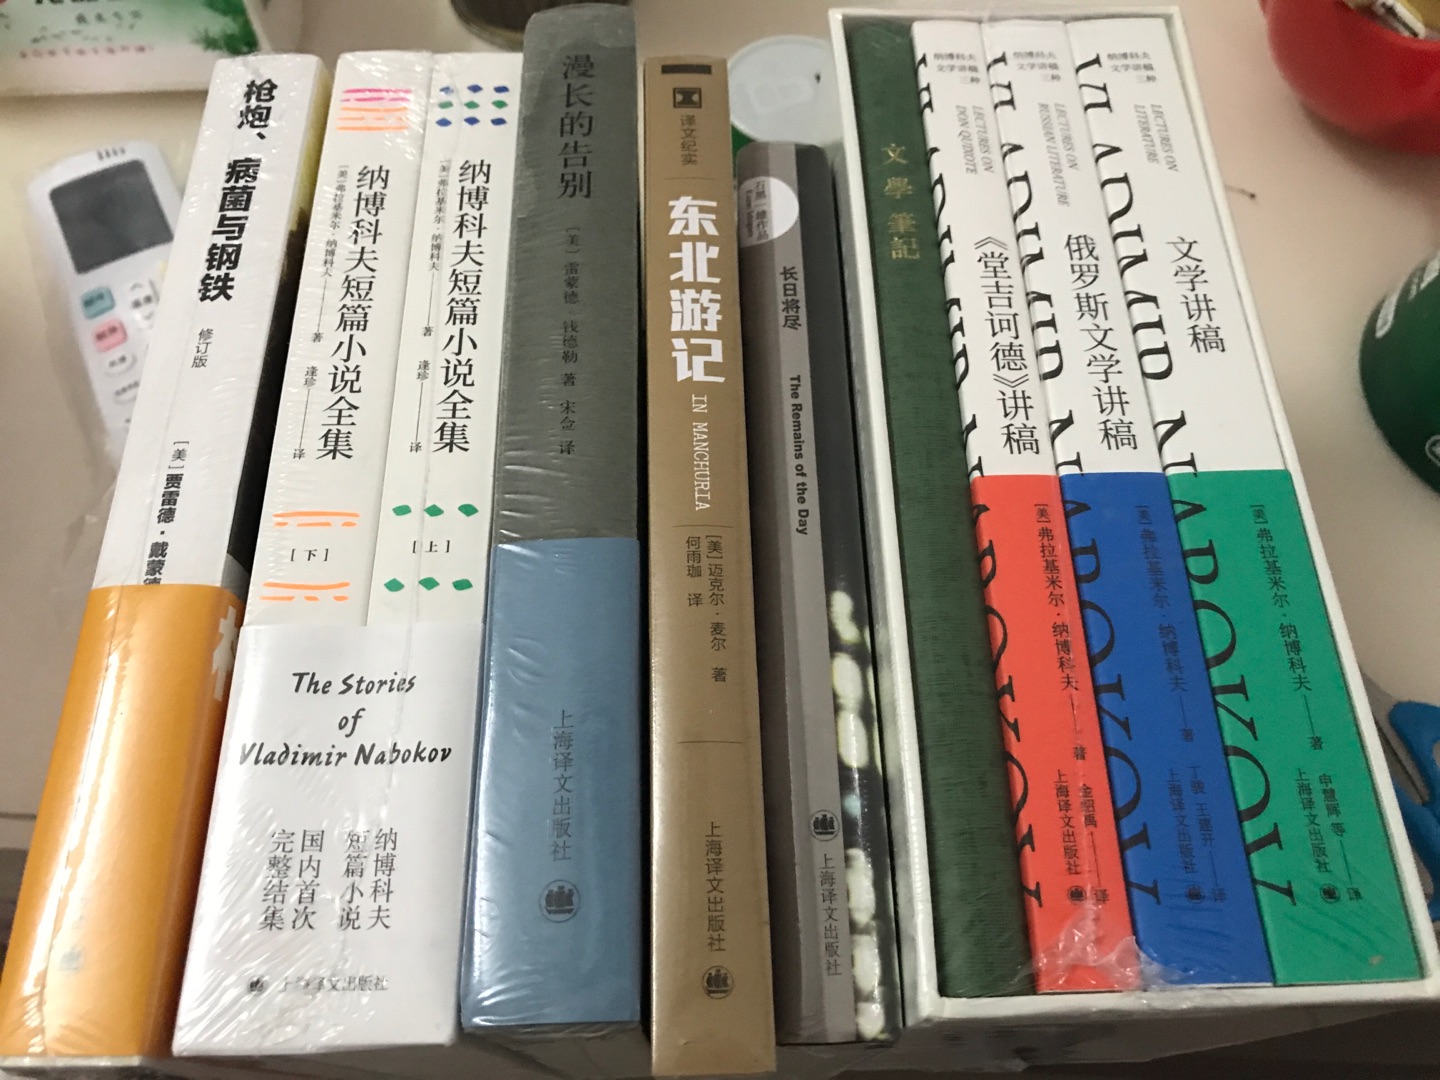 我就是上海译文的死忠粉啊！虽然出版社好多文集都圈钱，但是架不住喜欢啊！！！！！！！